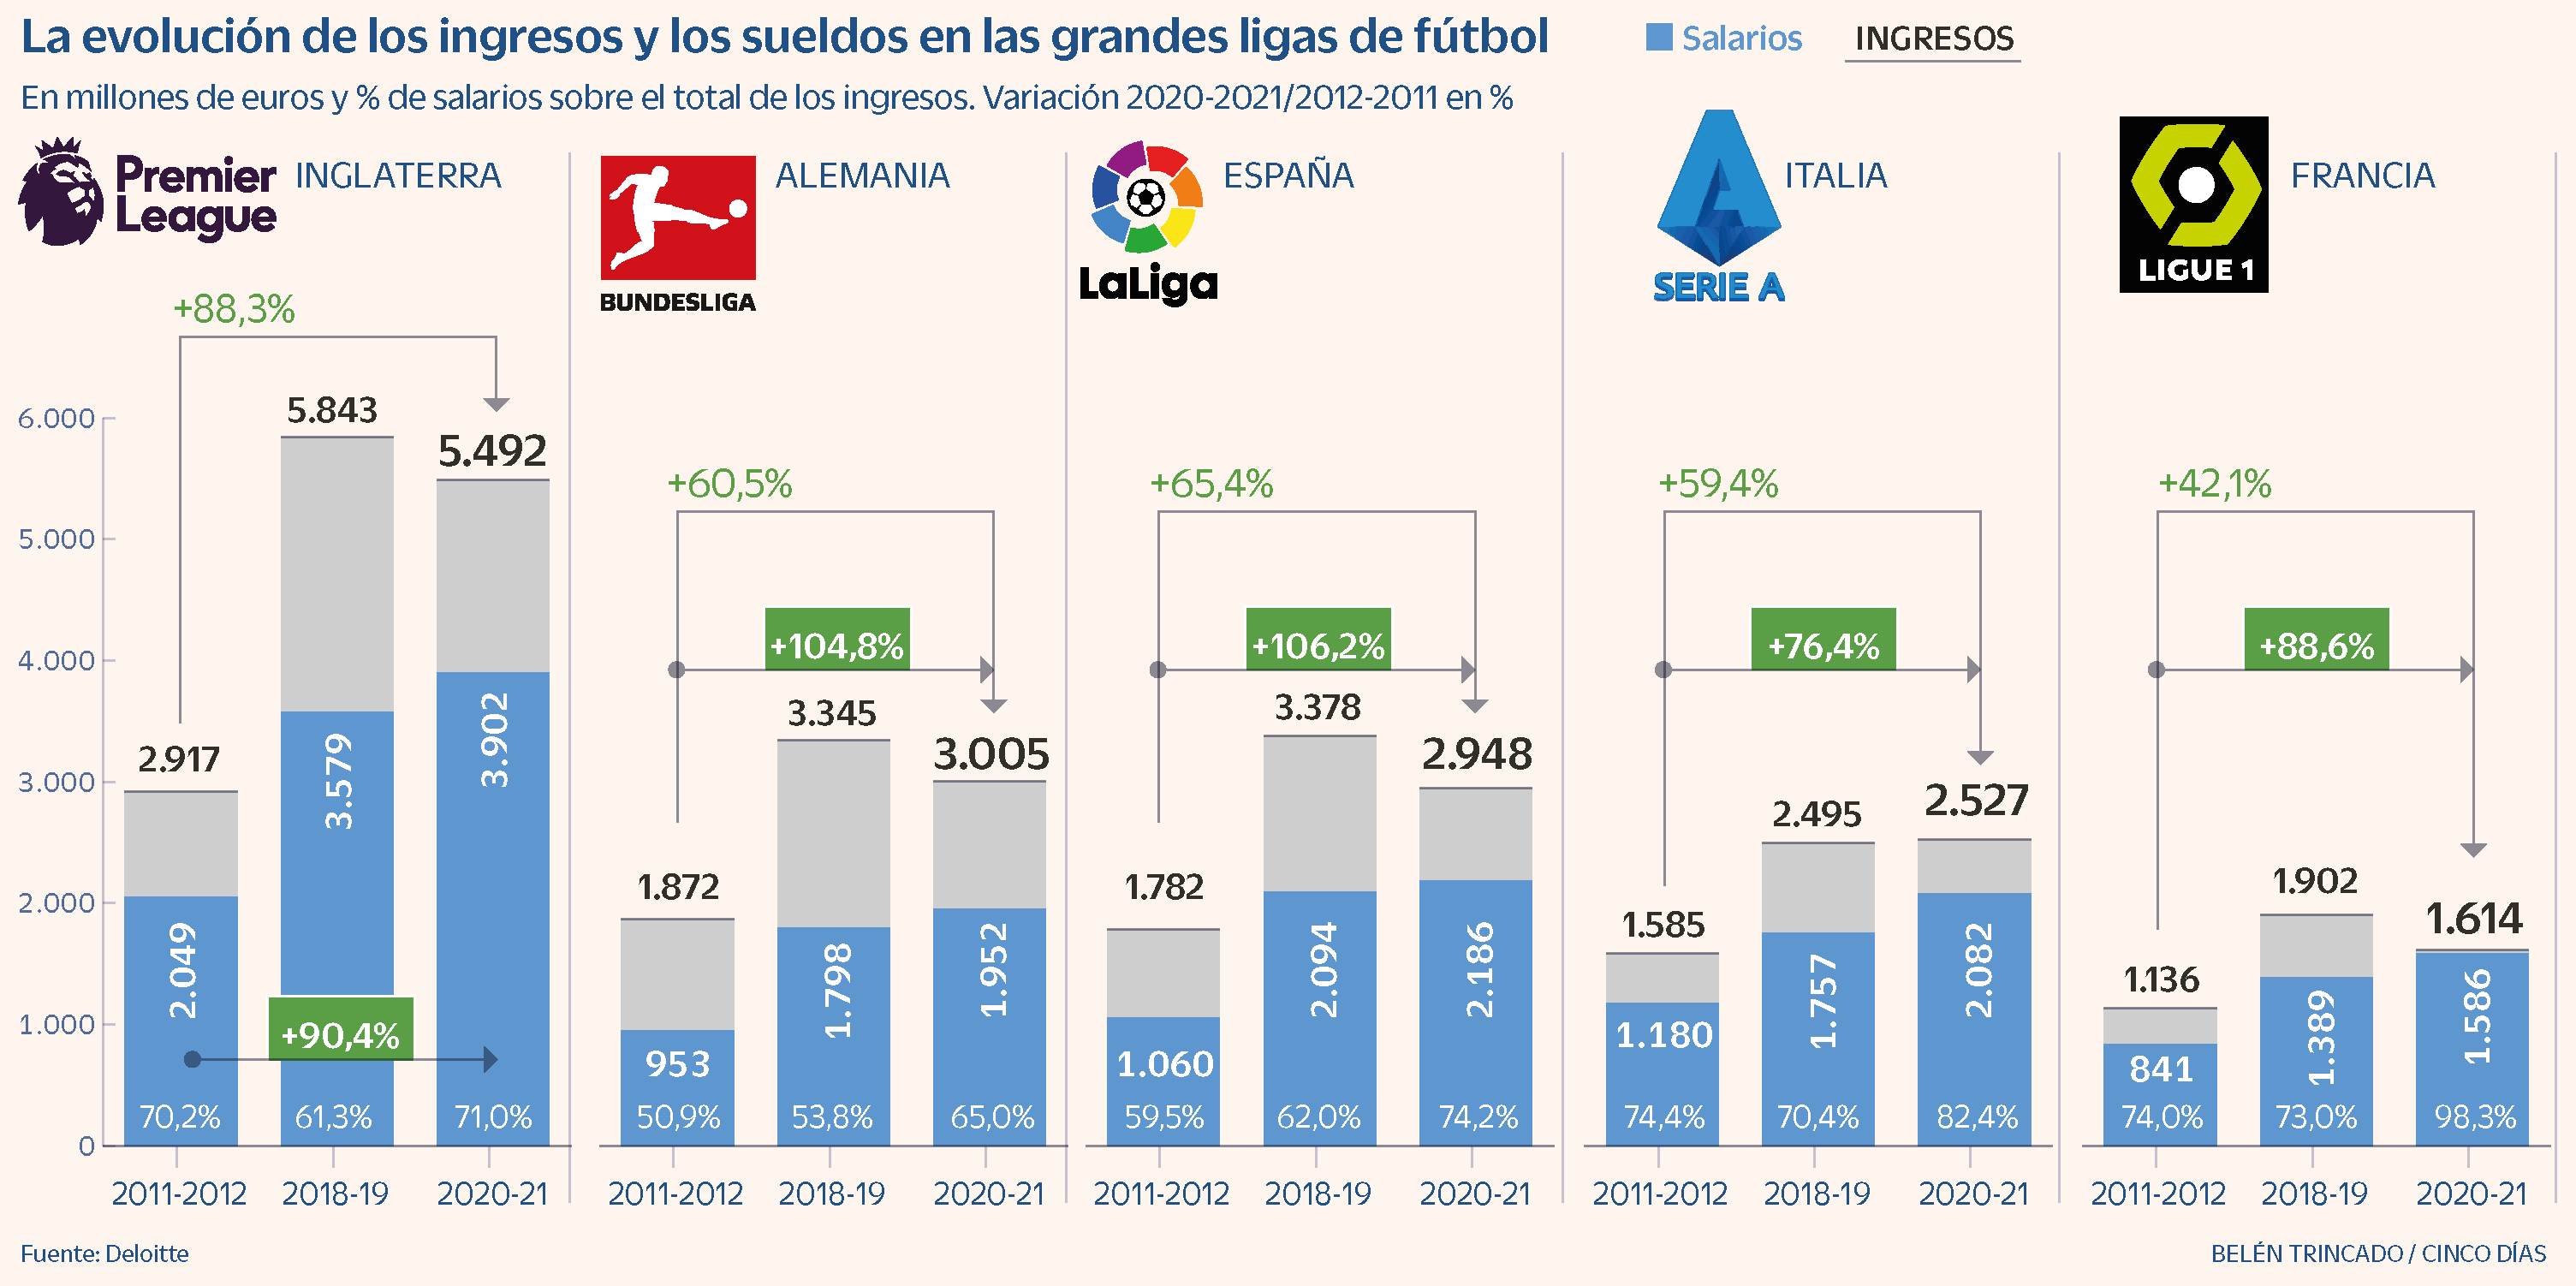 La española es la gran liga donde los sueldos en la última década | Compañías | Cinco